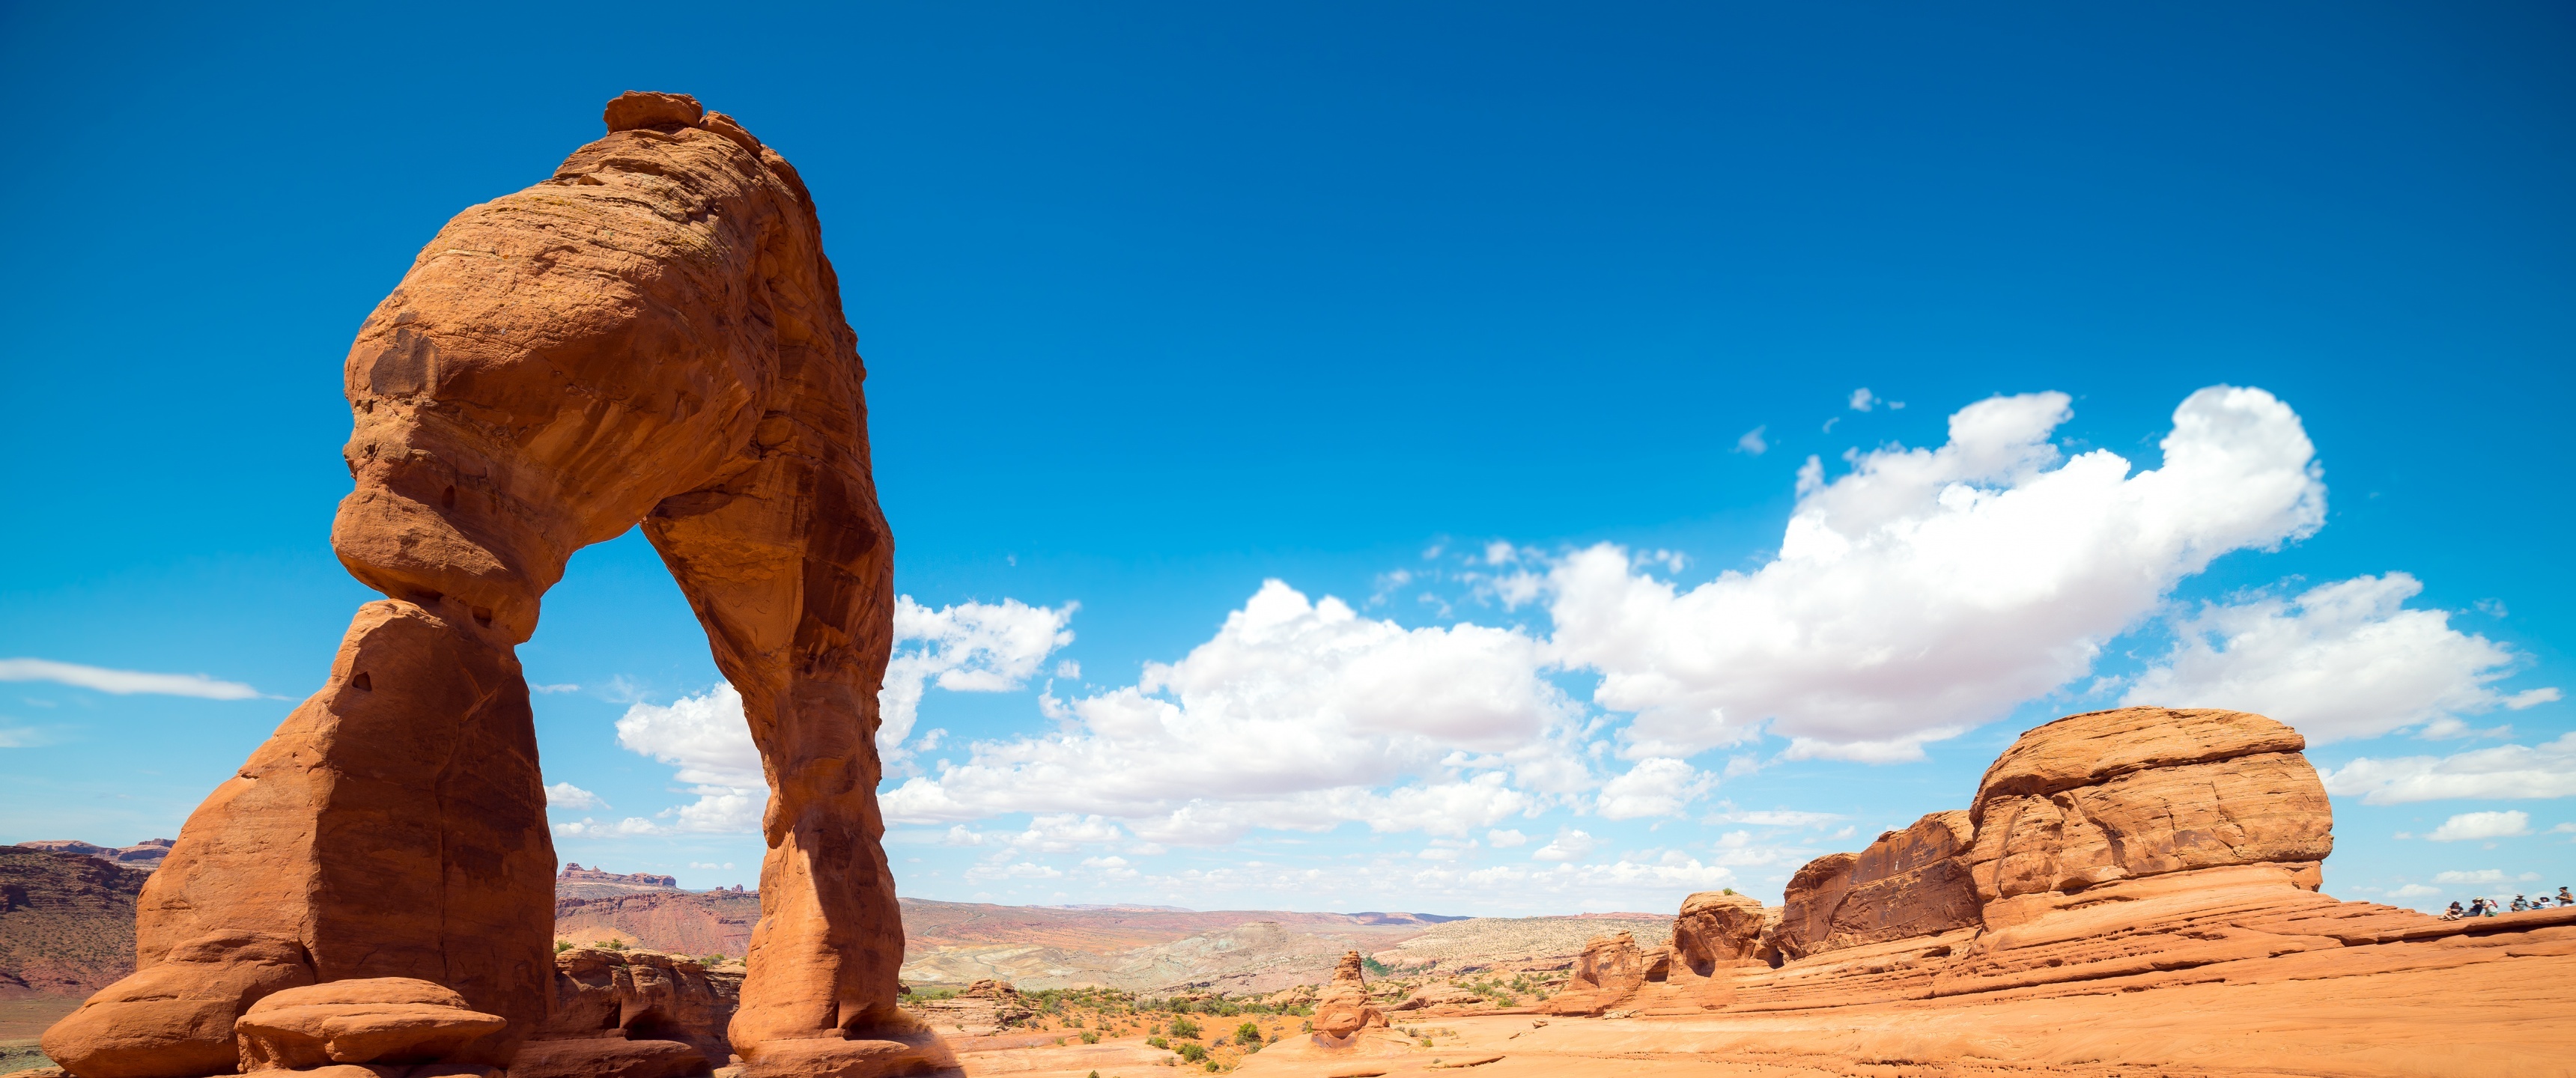 Delicate Arches, 4K wallpaper, Landmark of Utah, Majestic clouds, 3440x1440 Dual Screen Desktop